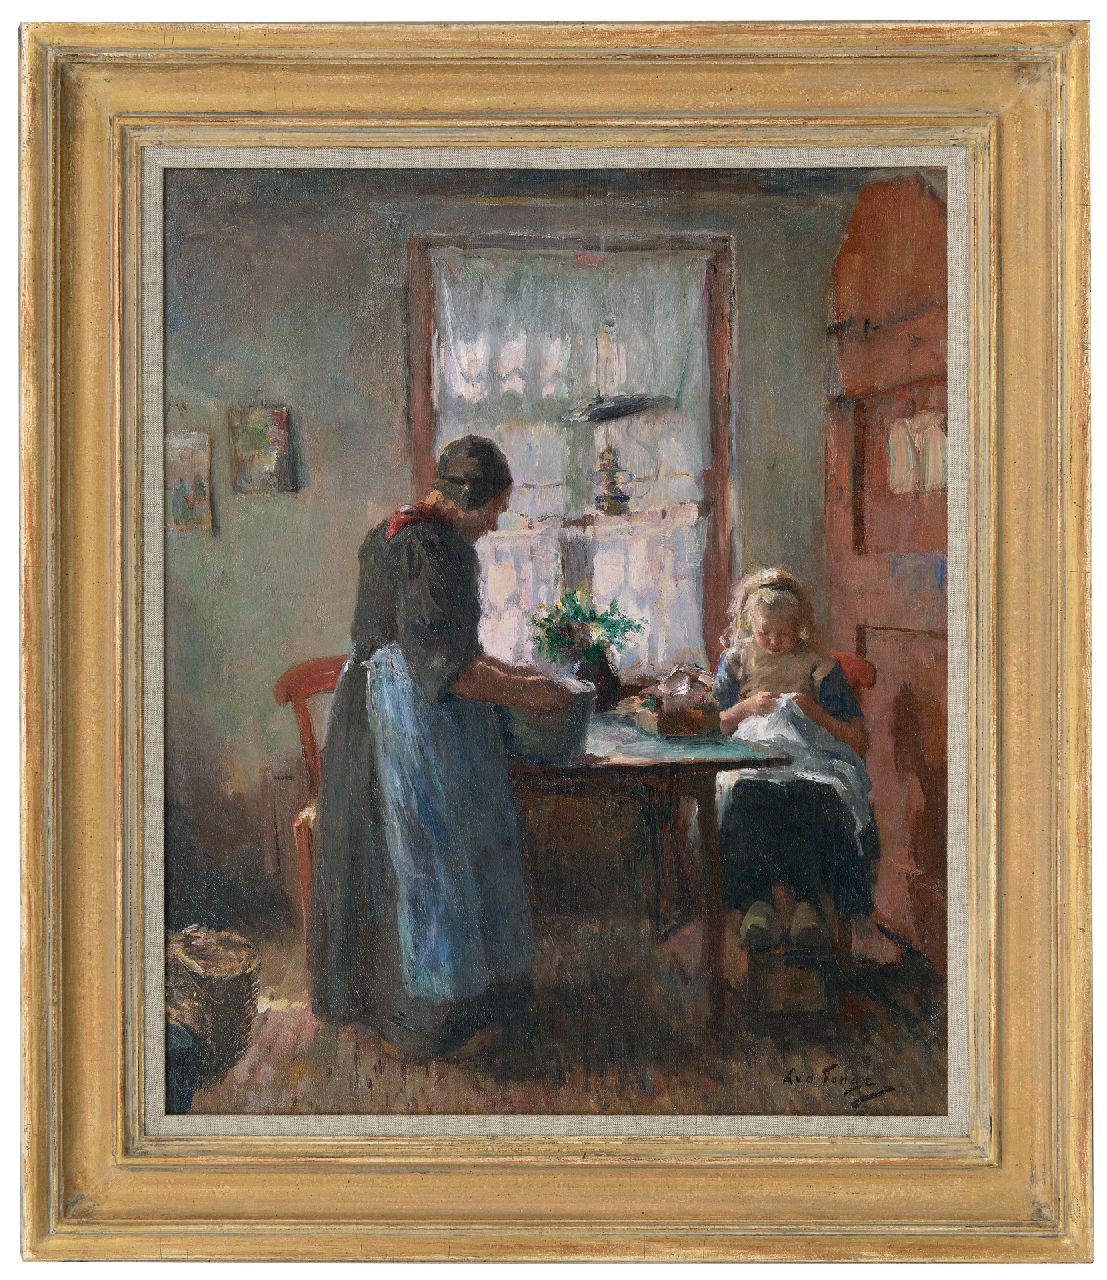 Tonge L.L. van der | 'Lammert' Leire van der Tonge | Schilderijen te koop aangeboden | Larens interieur met vrouw en handwerkend meisje, olieverf op doek 54,3 x 45,2 cm, gesigneerd rechtsonder